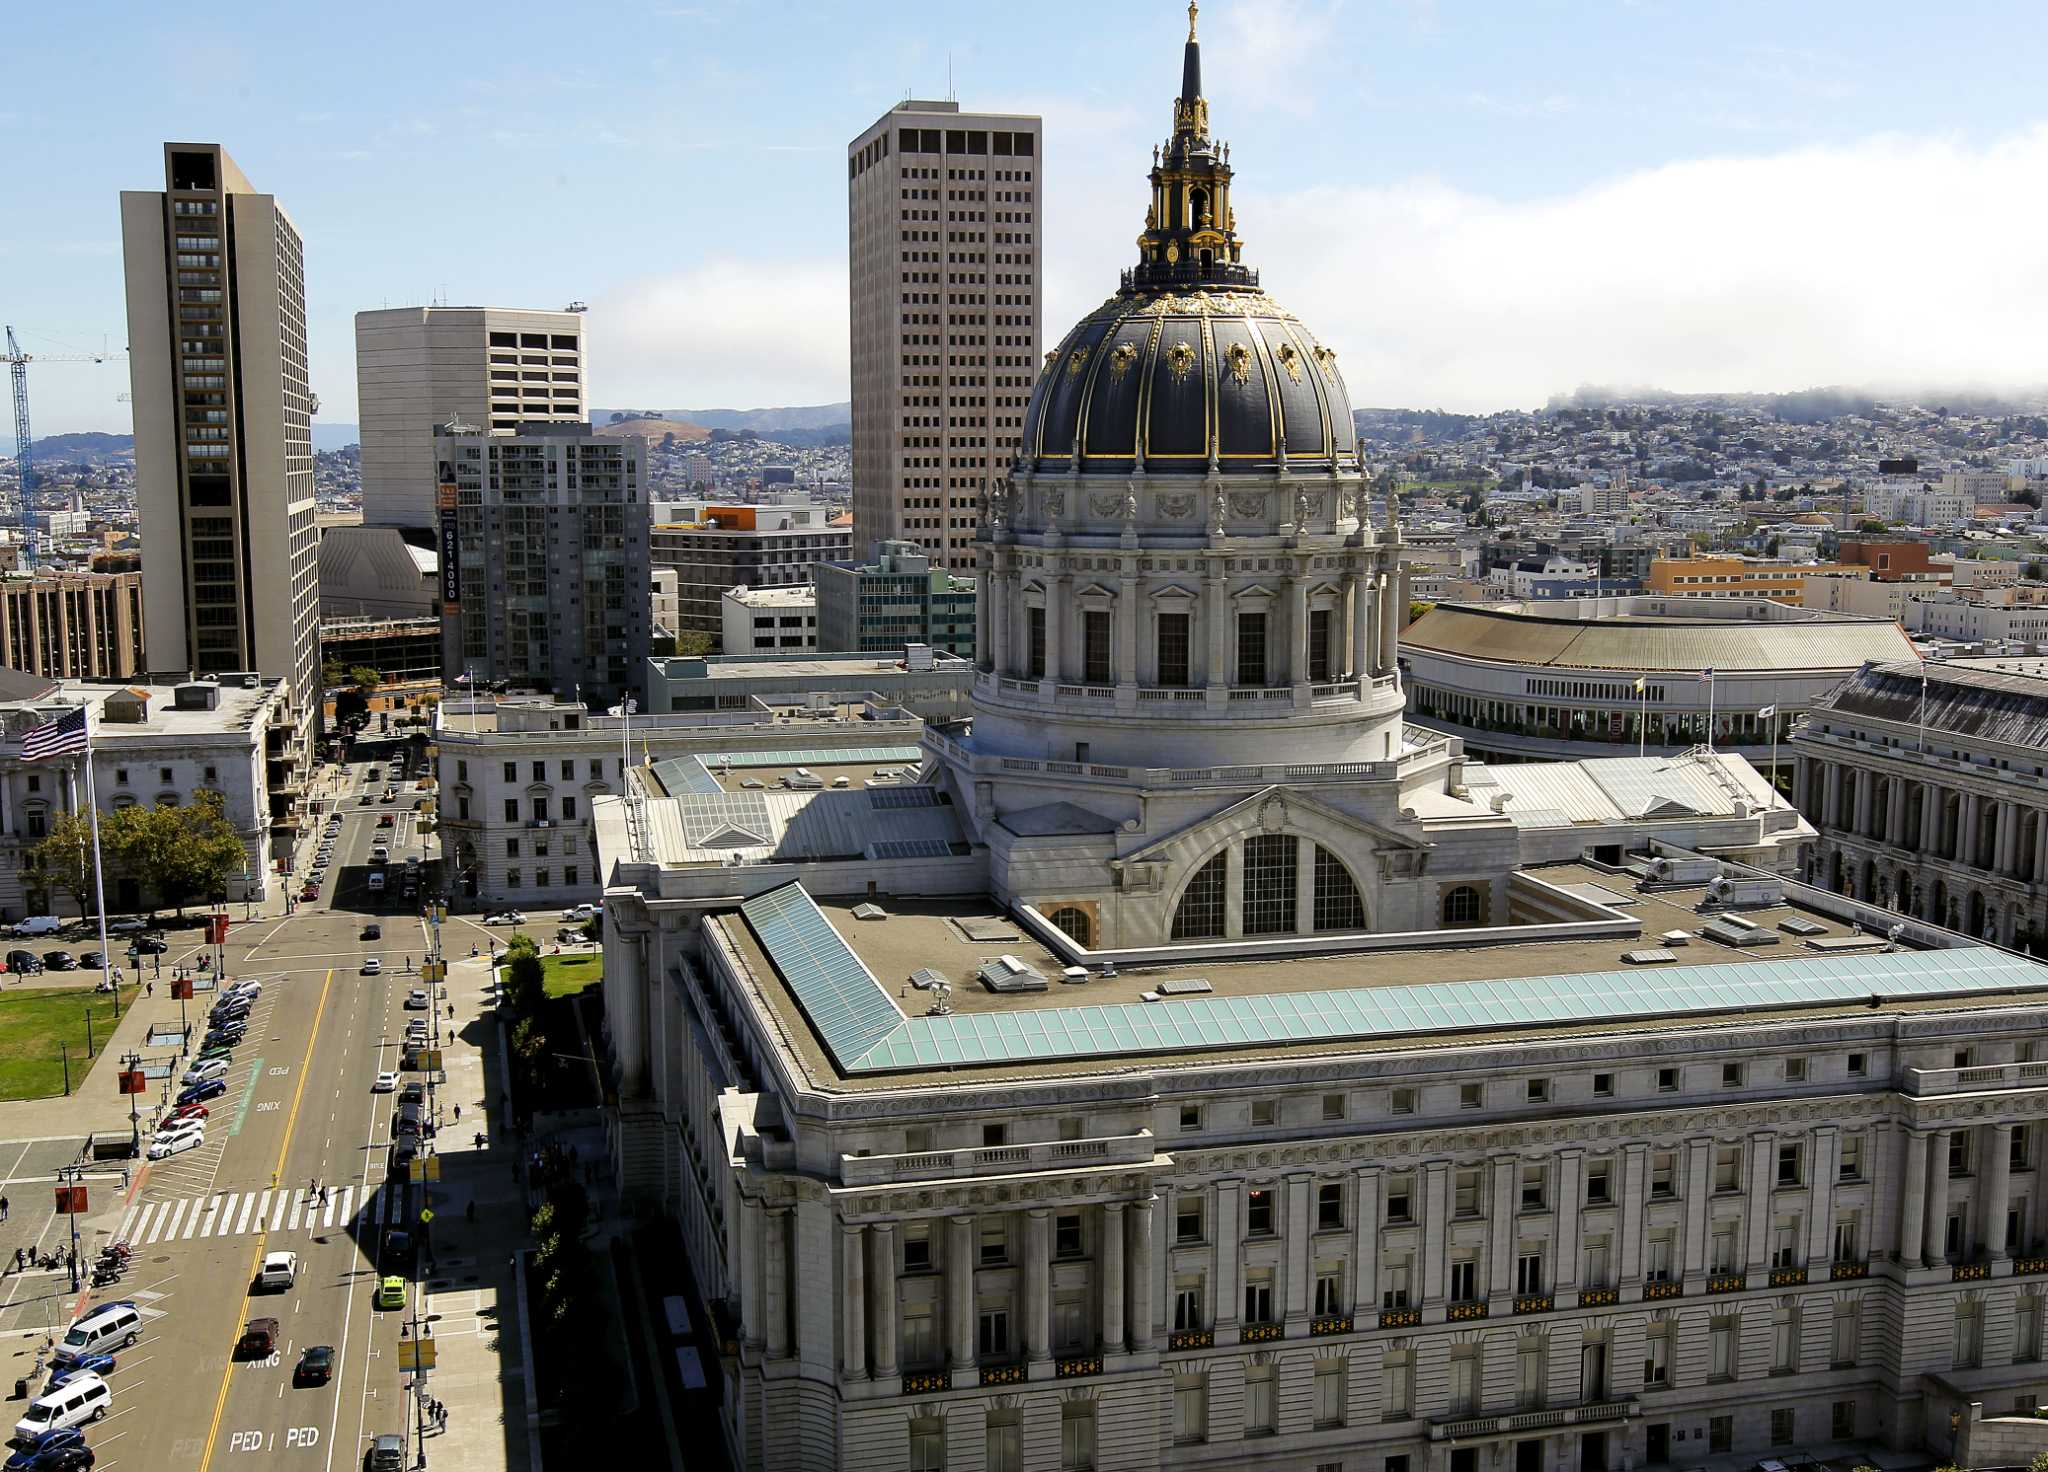 旧金山市政工作人员因腐败调查被指控滥用公共资金